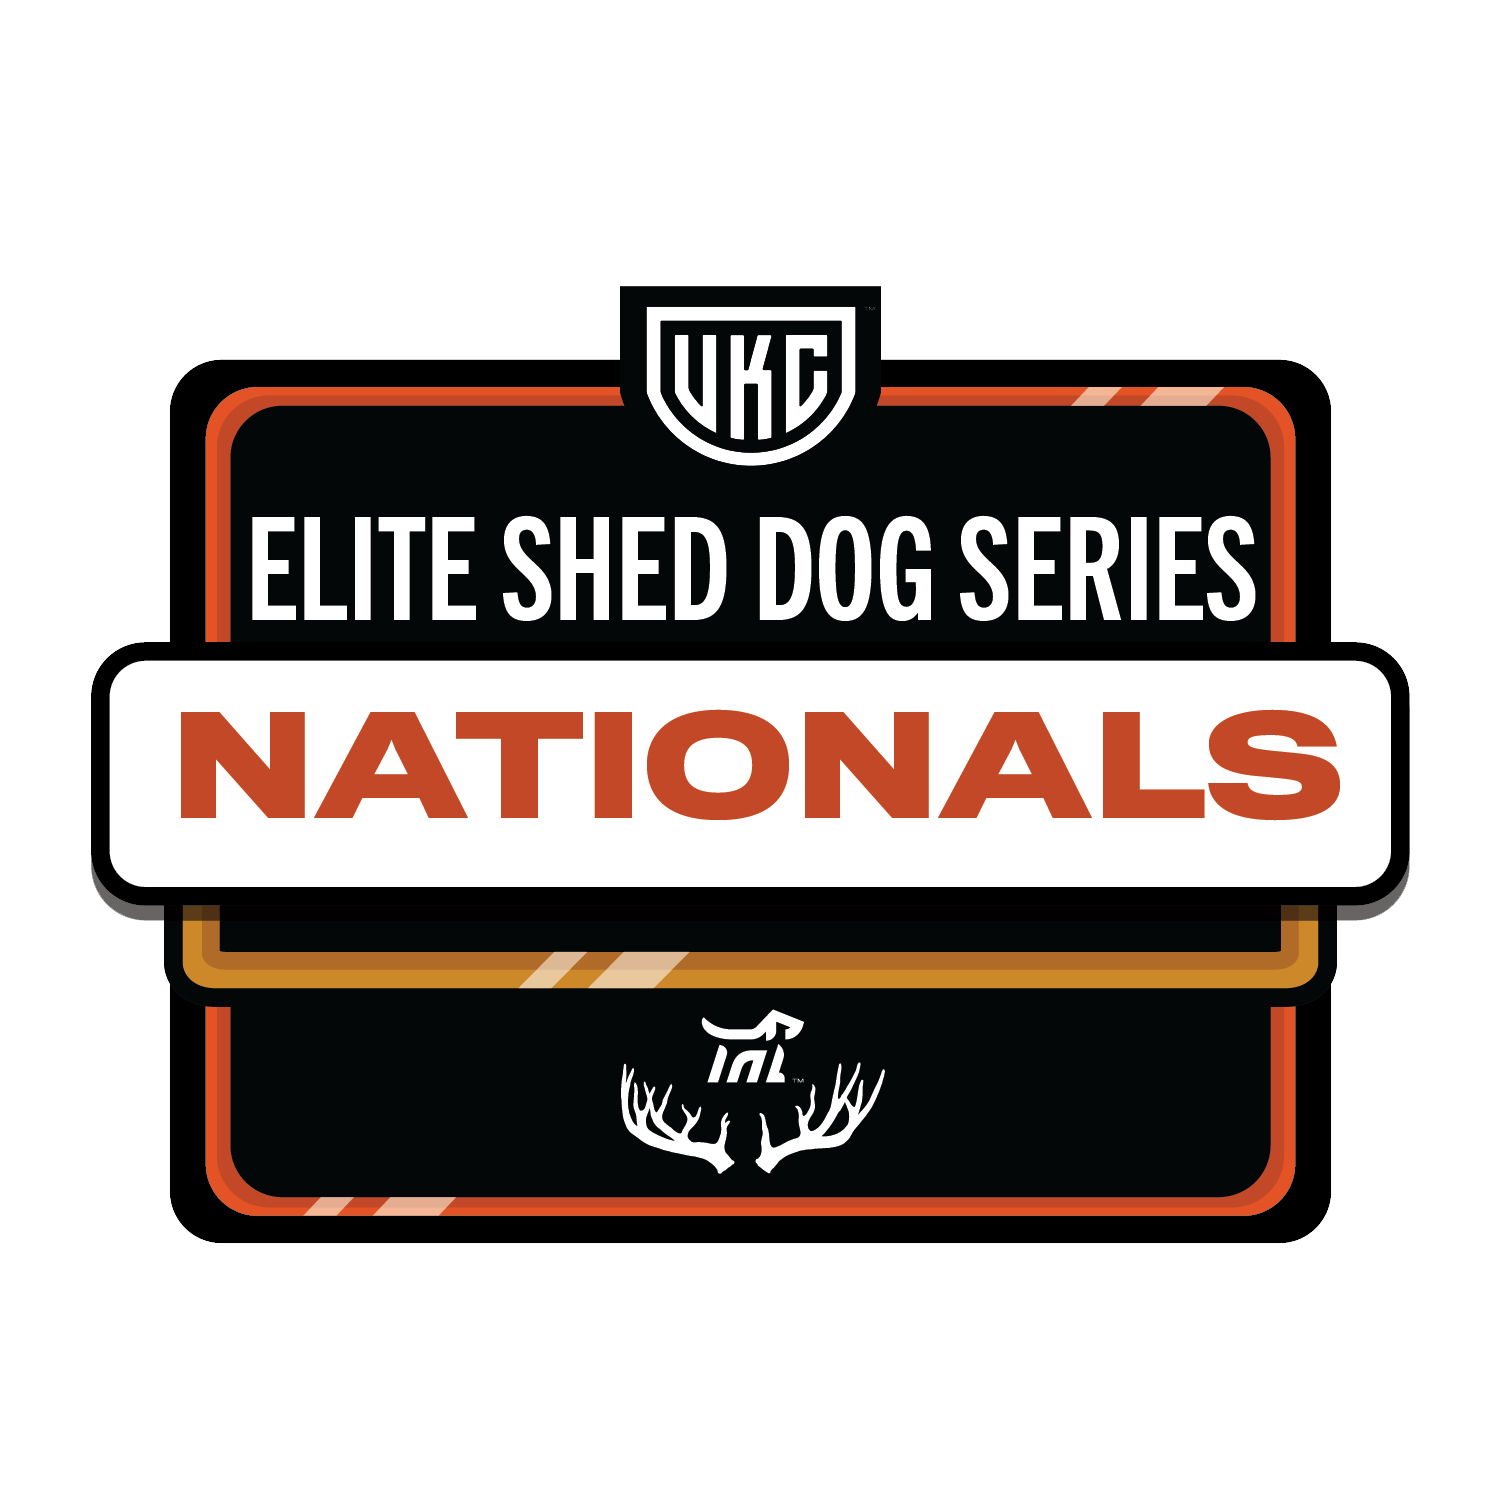 UKC Shed Dog Nationals